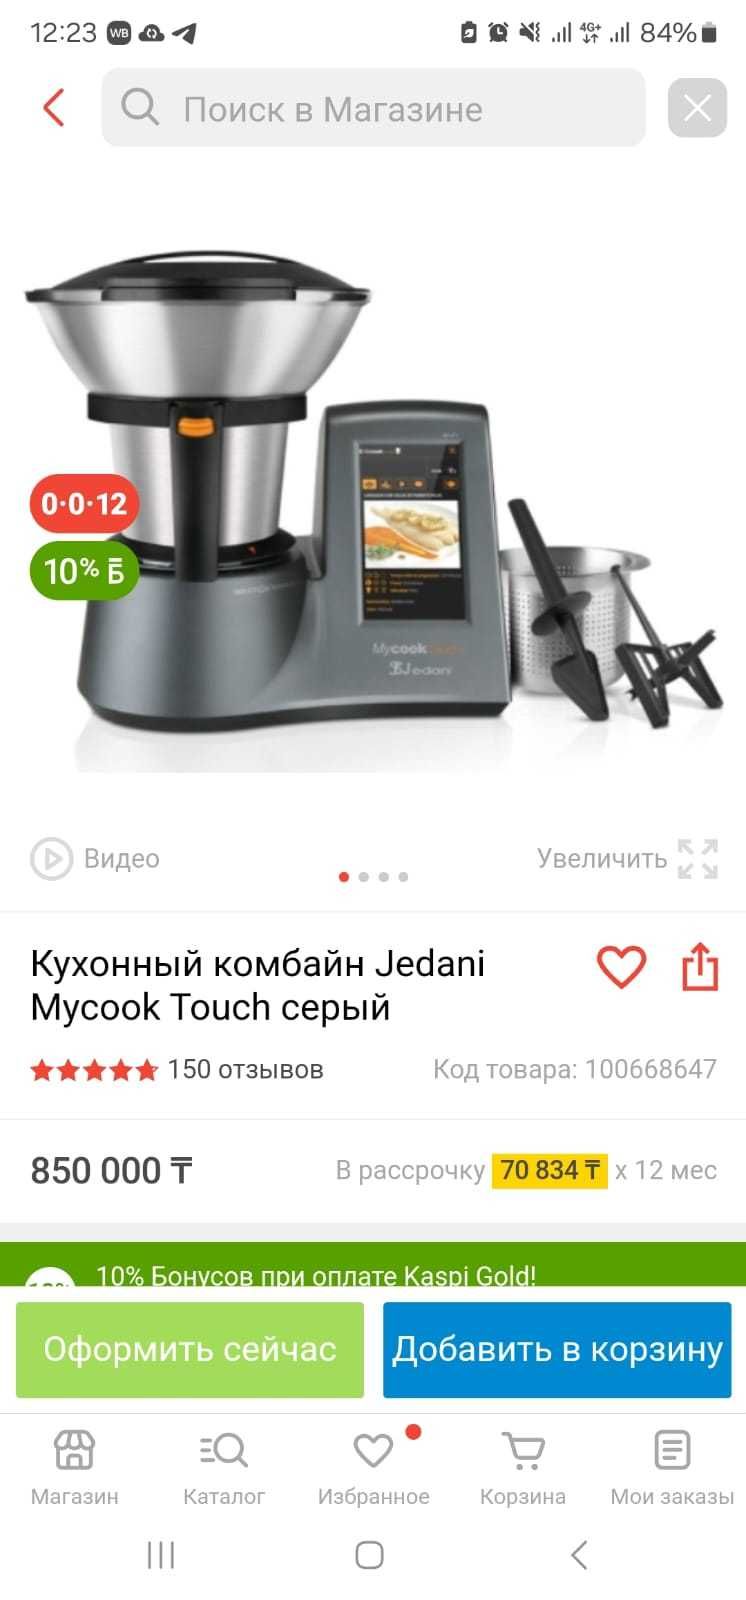 Mycook Jedani кухонный комбайн